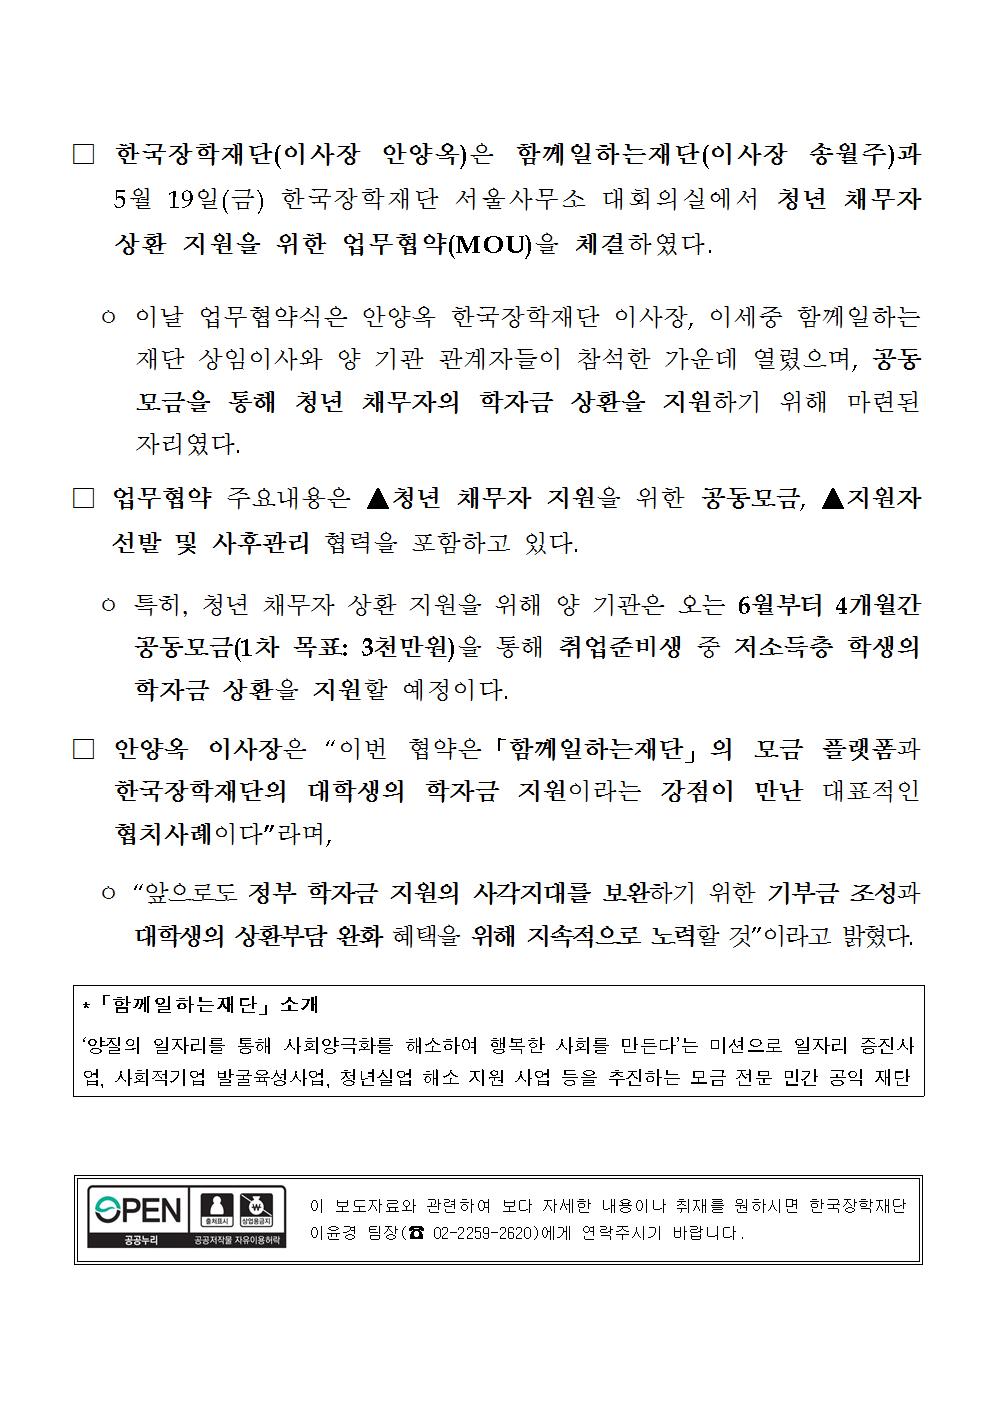 05-19(금)[보도자료] 한국장학재단, 청년 채무자 상환 지원을 위한 공동모금 추진002.jpg